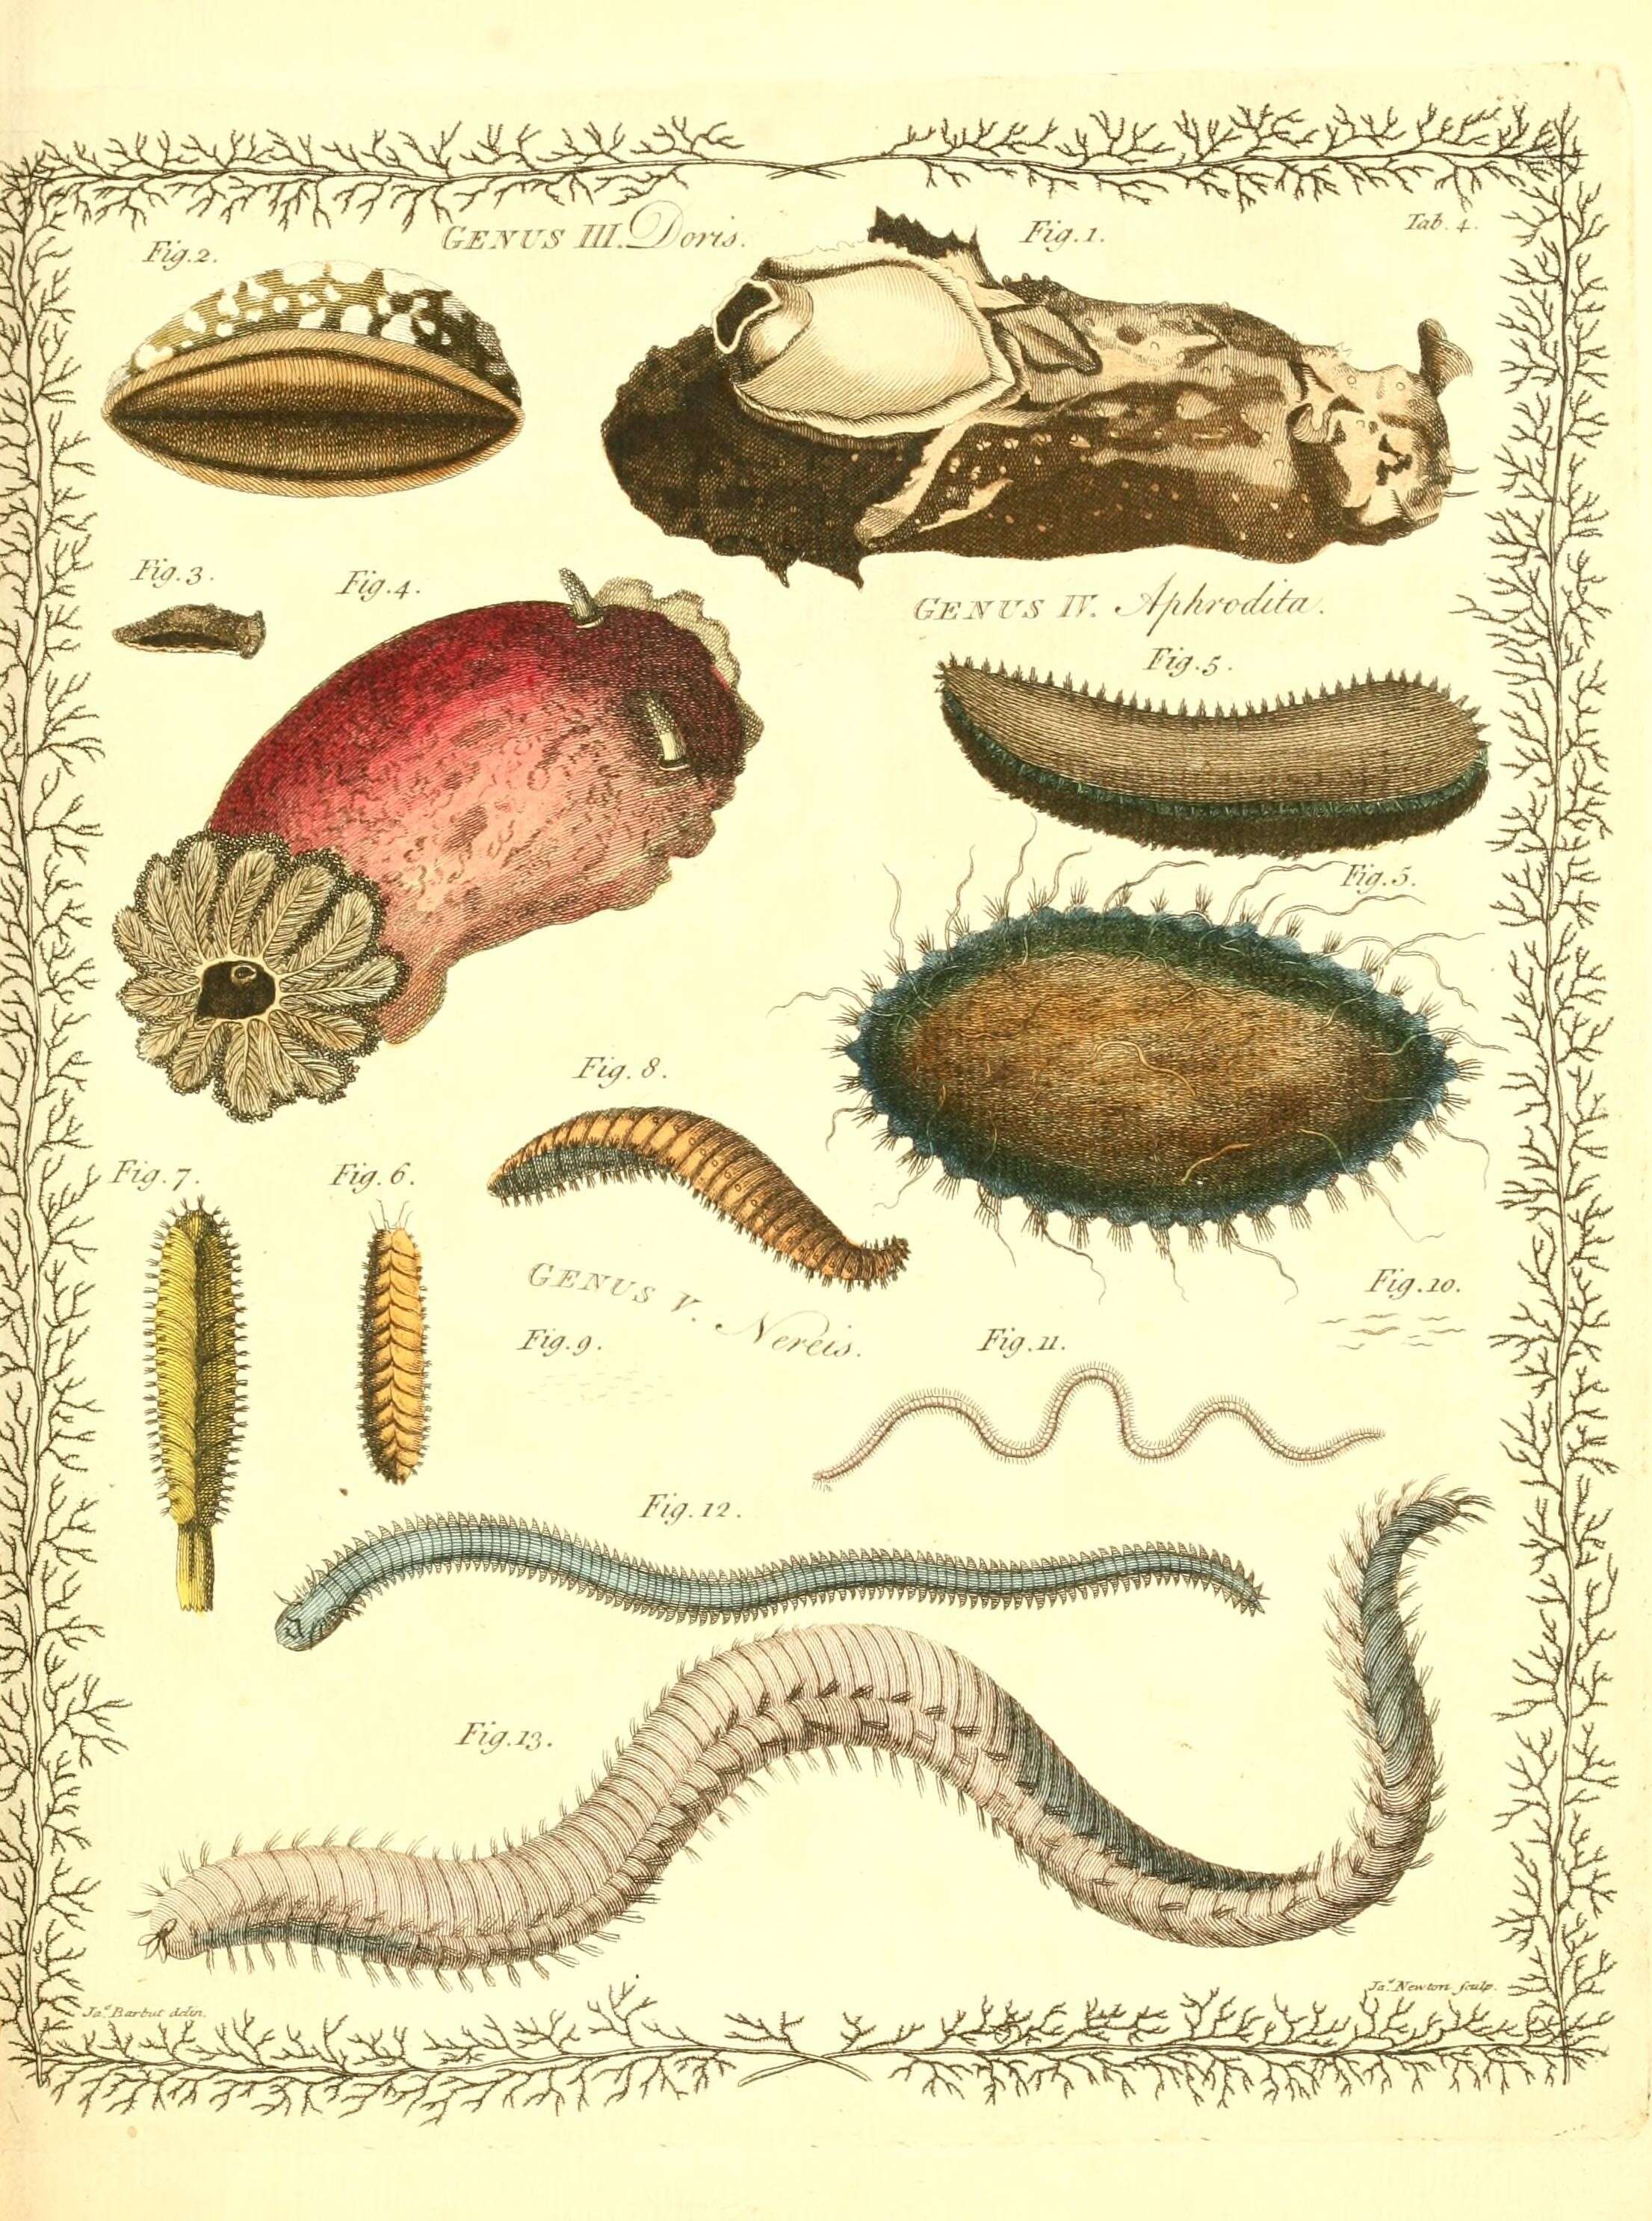 Image de Doris verrucosa Linnaeus 1758